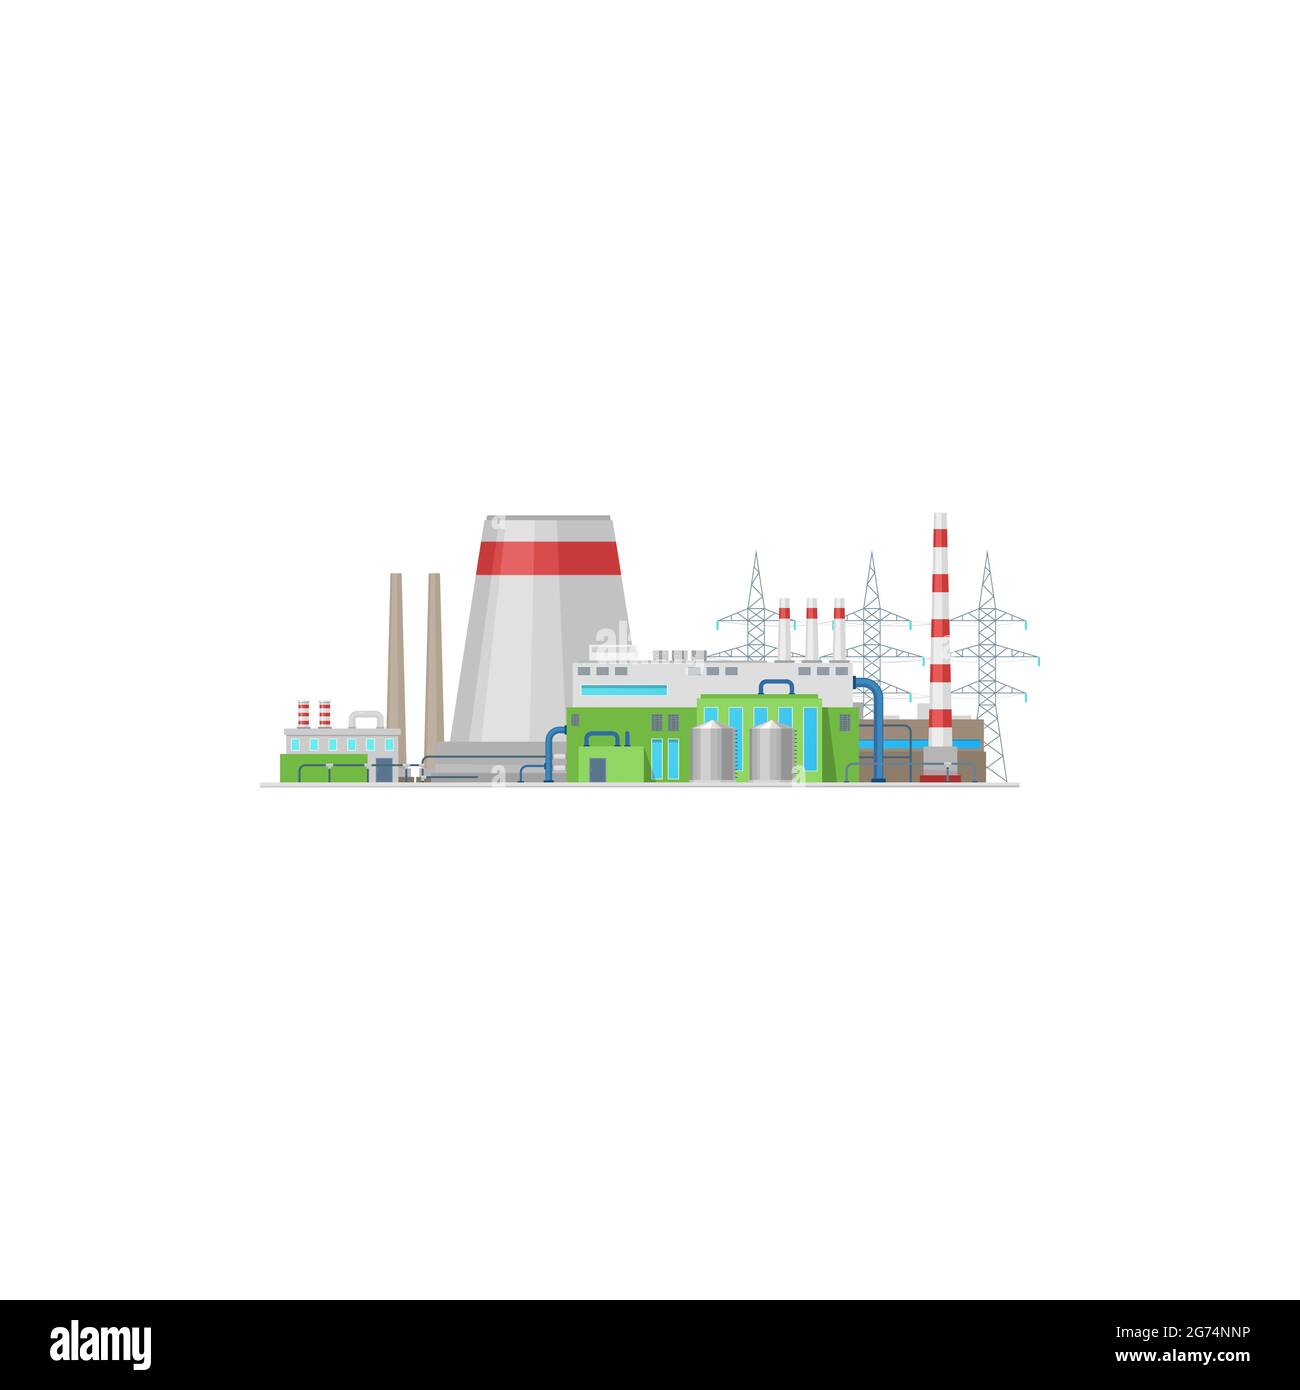 Kraftwerk oder Energiestation und Fabriktürme Vektor Elektroindustrie Symbol. Kernkraftwerk nukleare, chemische oder thermische Fabrikgebäude mit Turbine Stock Vektor